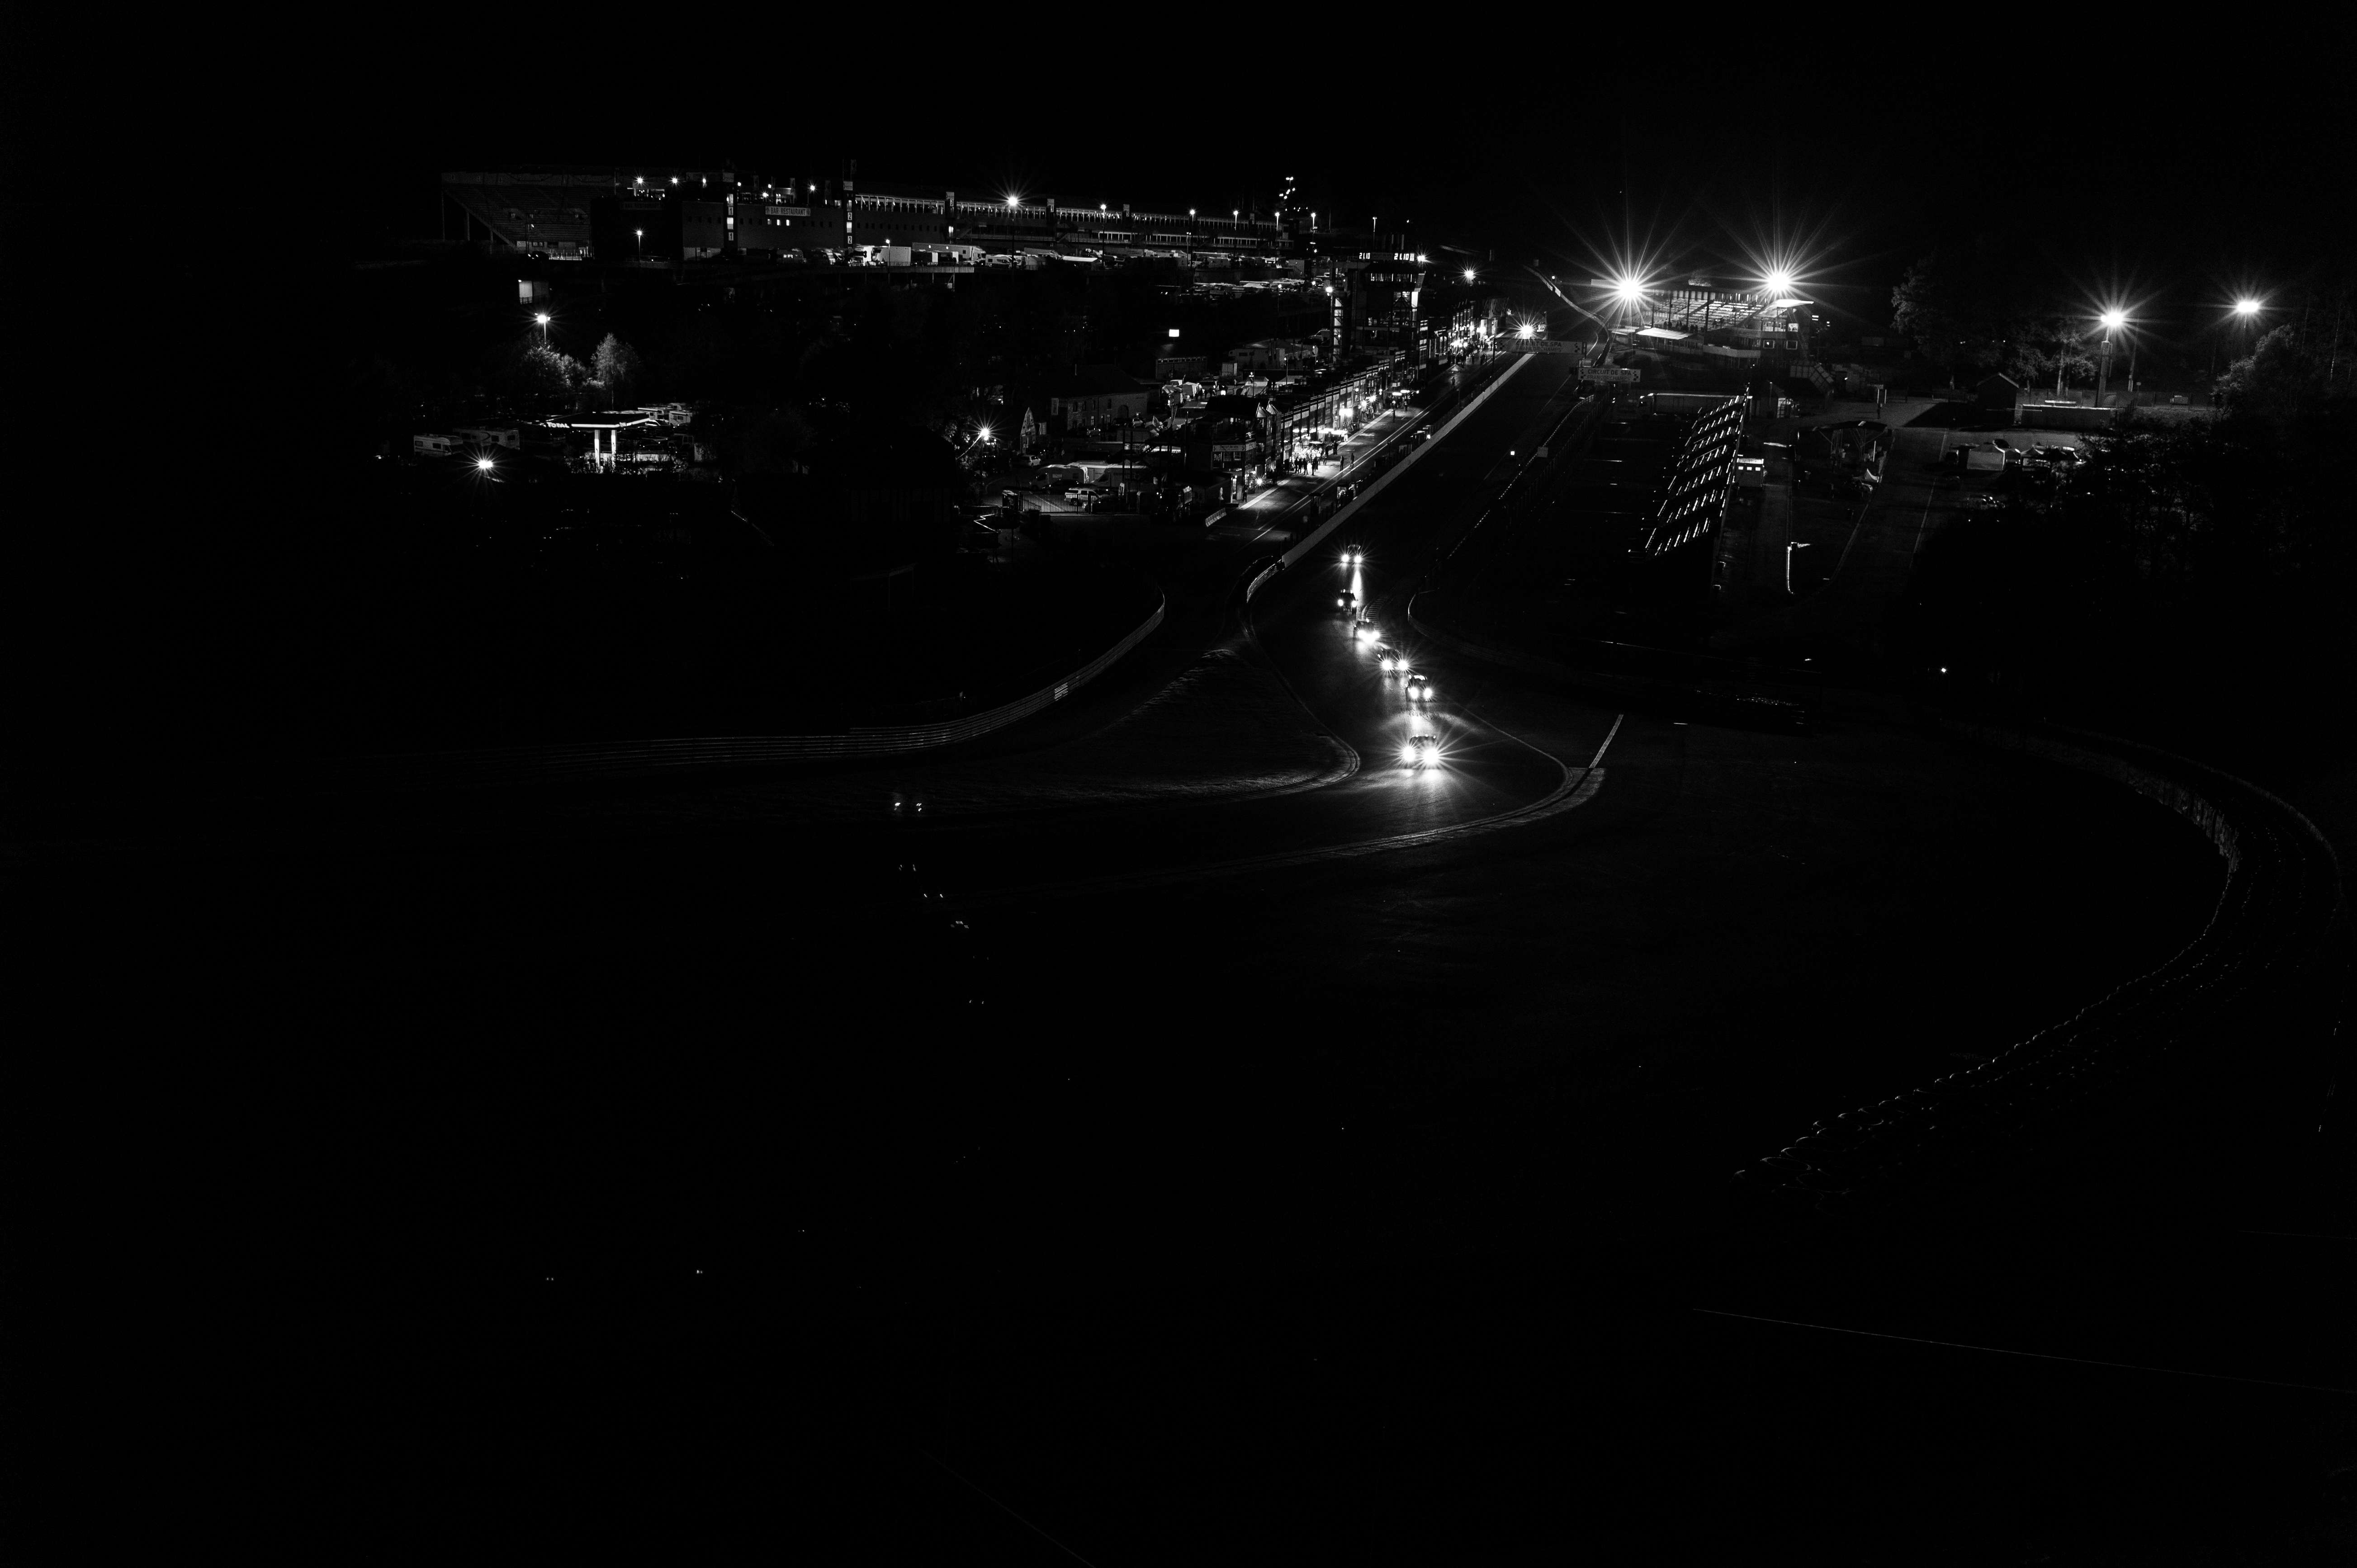 Le Circuit Spa Francorchamps